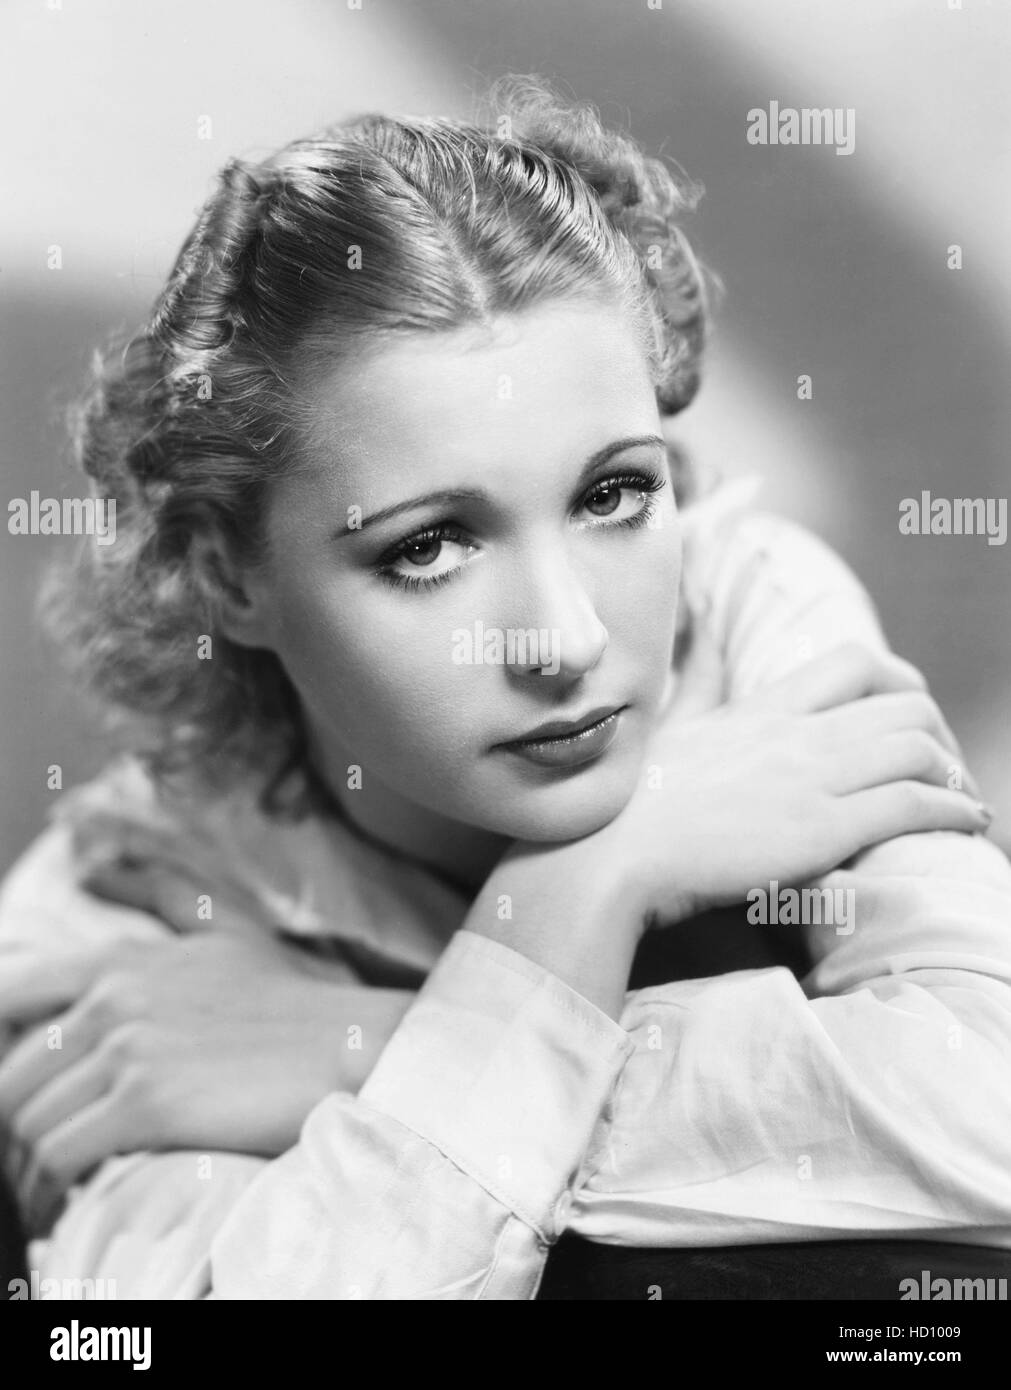 Irene Ware, mid 1930s Stock Photo - Alamy